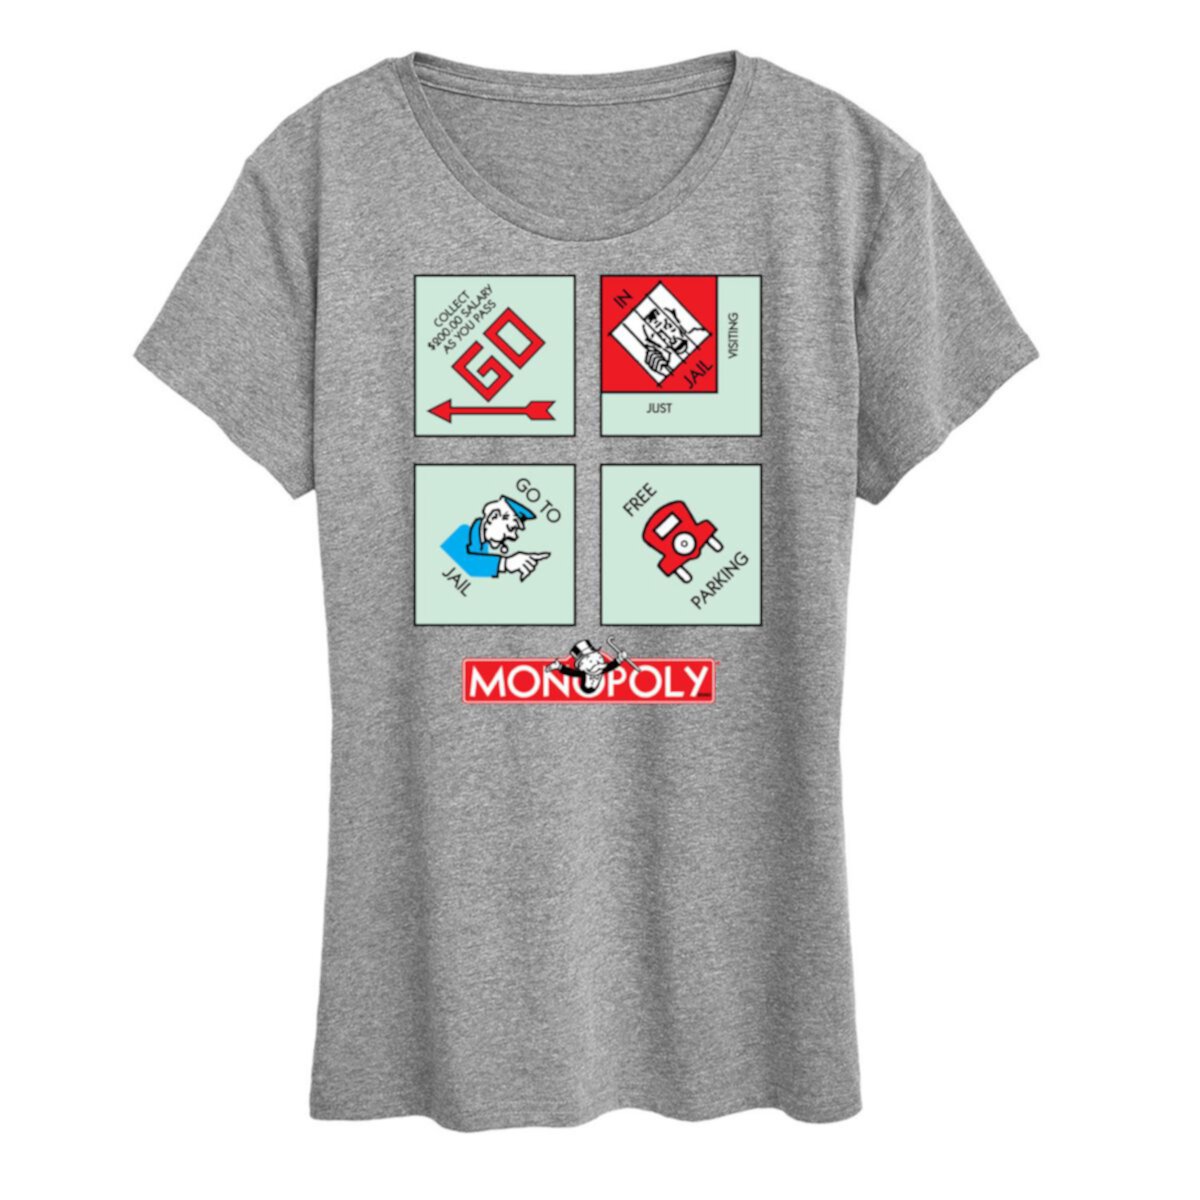 Женская футболка с квадратными углами и рисунком «Монополия» HASBRO